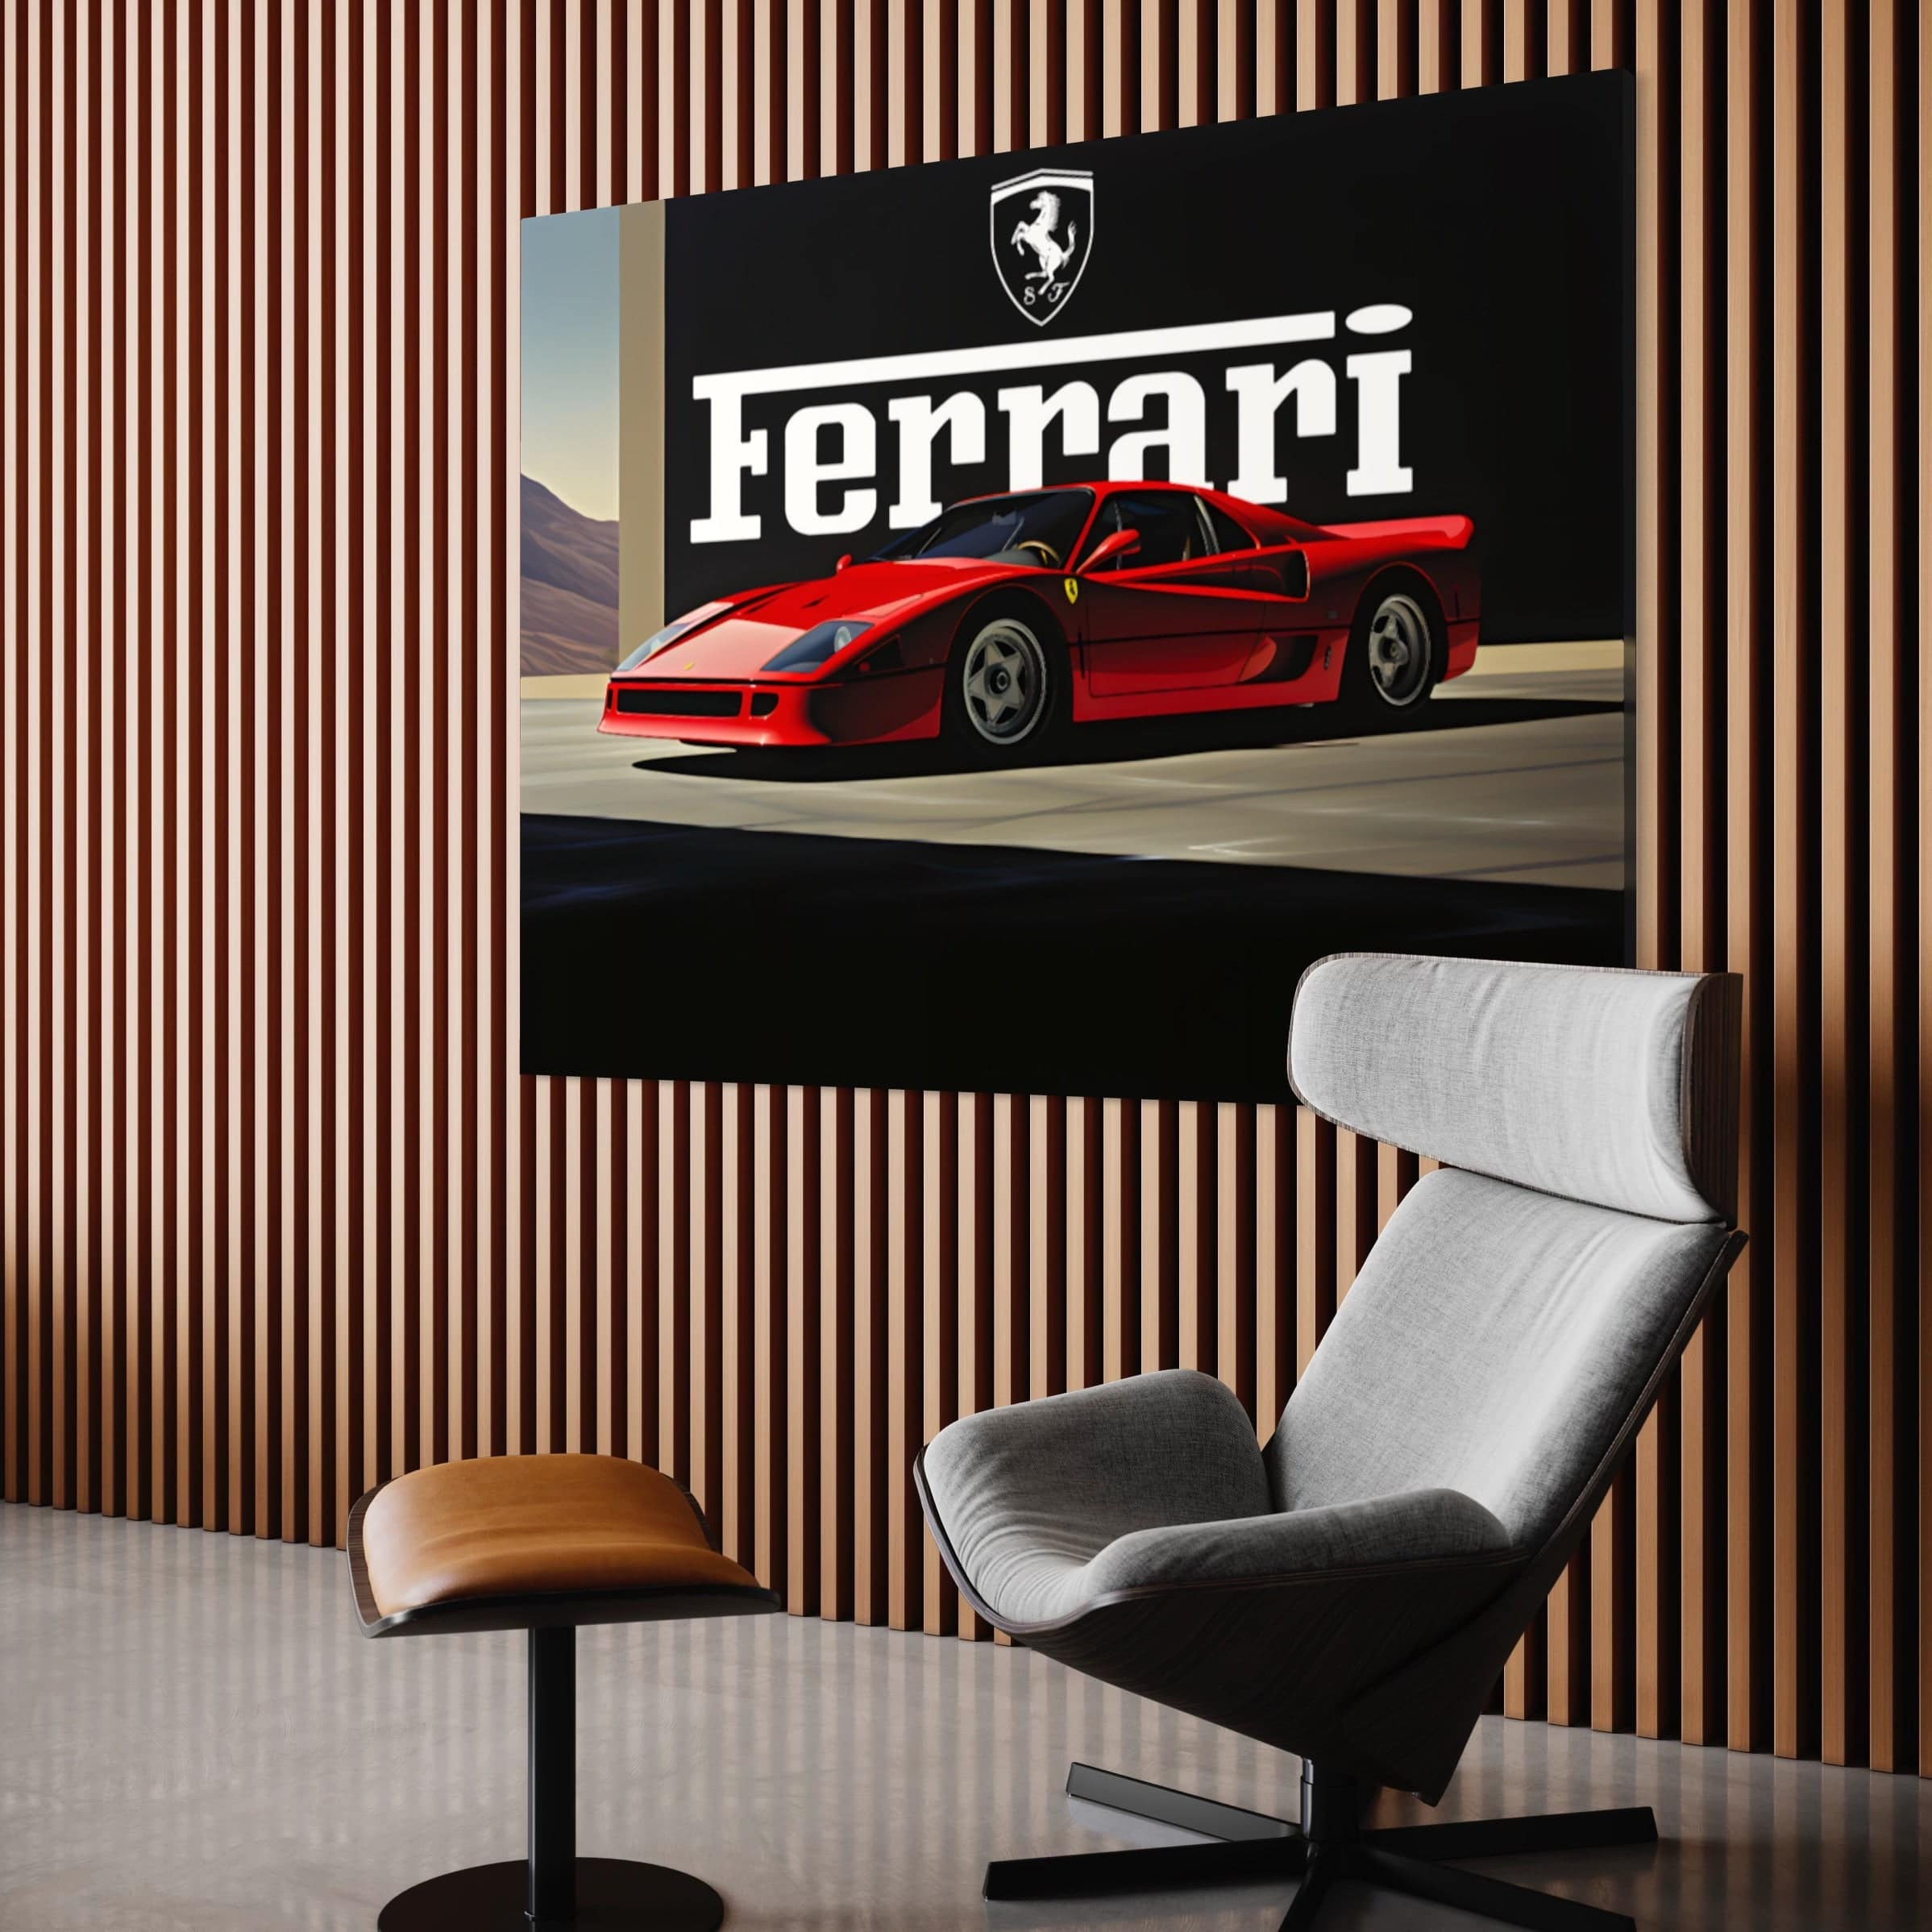 Ferrari Super Car - Tableau voiture Ferrari - Fabulartz.fr 